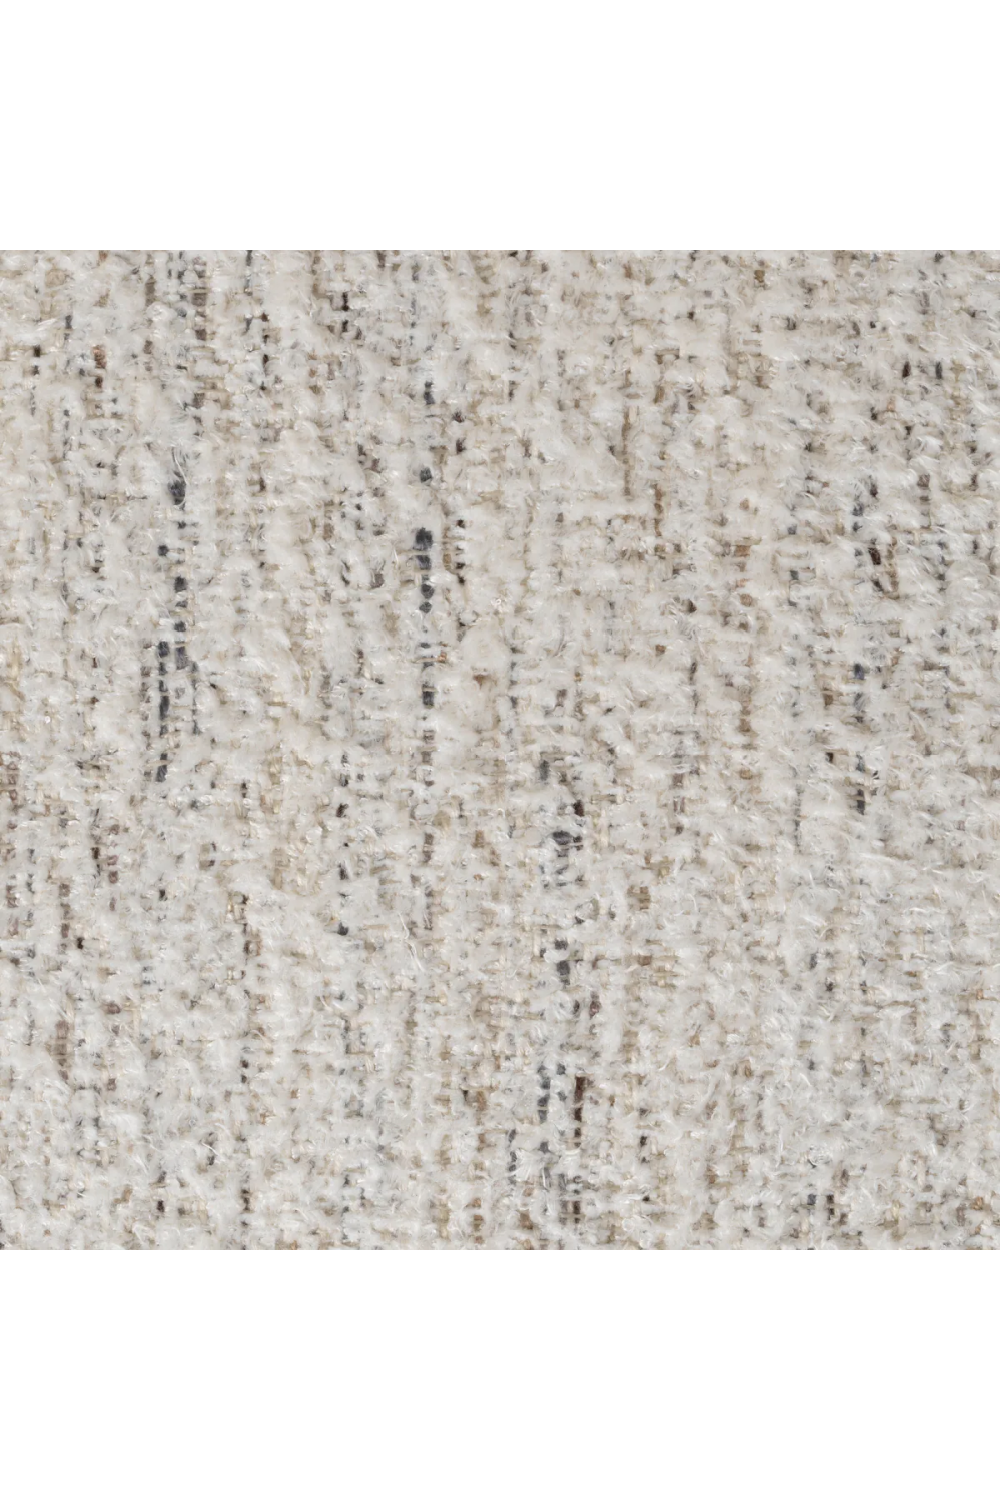 Off-White Fabric Sofa | Eichholtz York  | Oroa.com